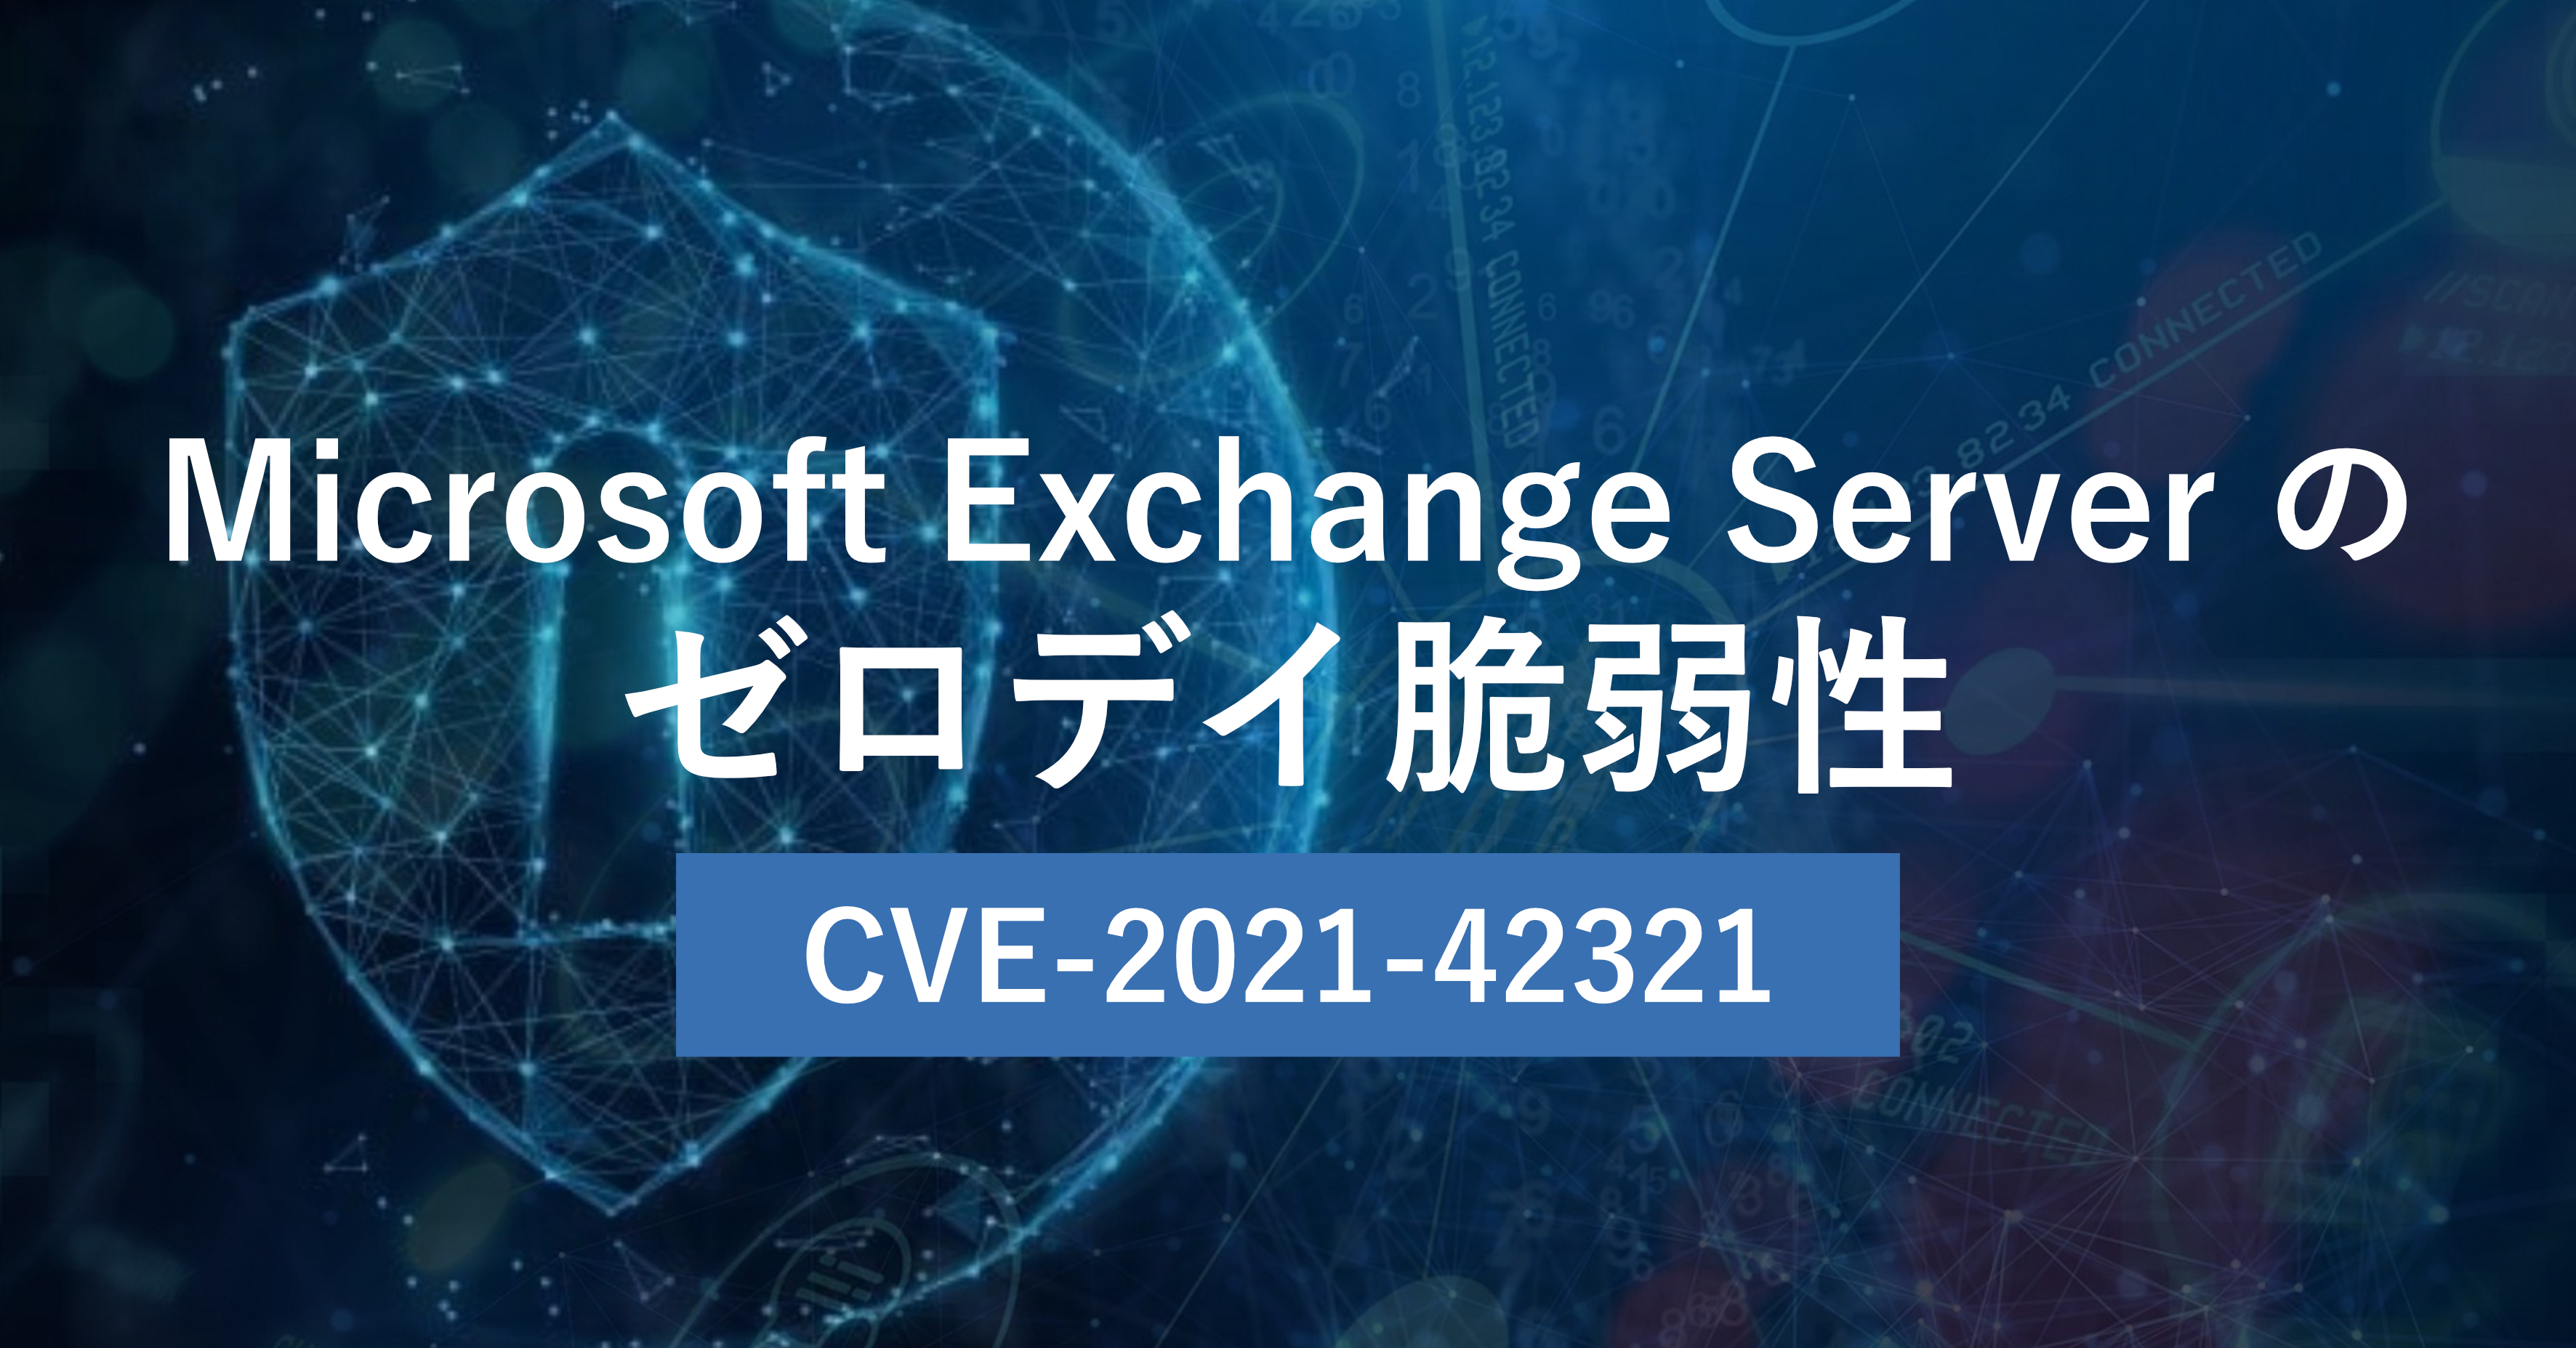 CVE-2021-42321